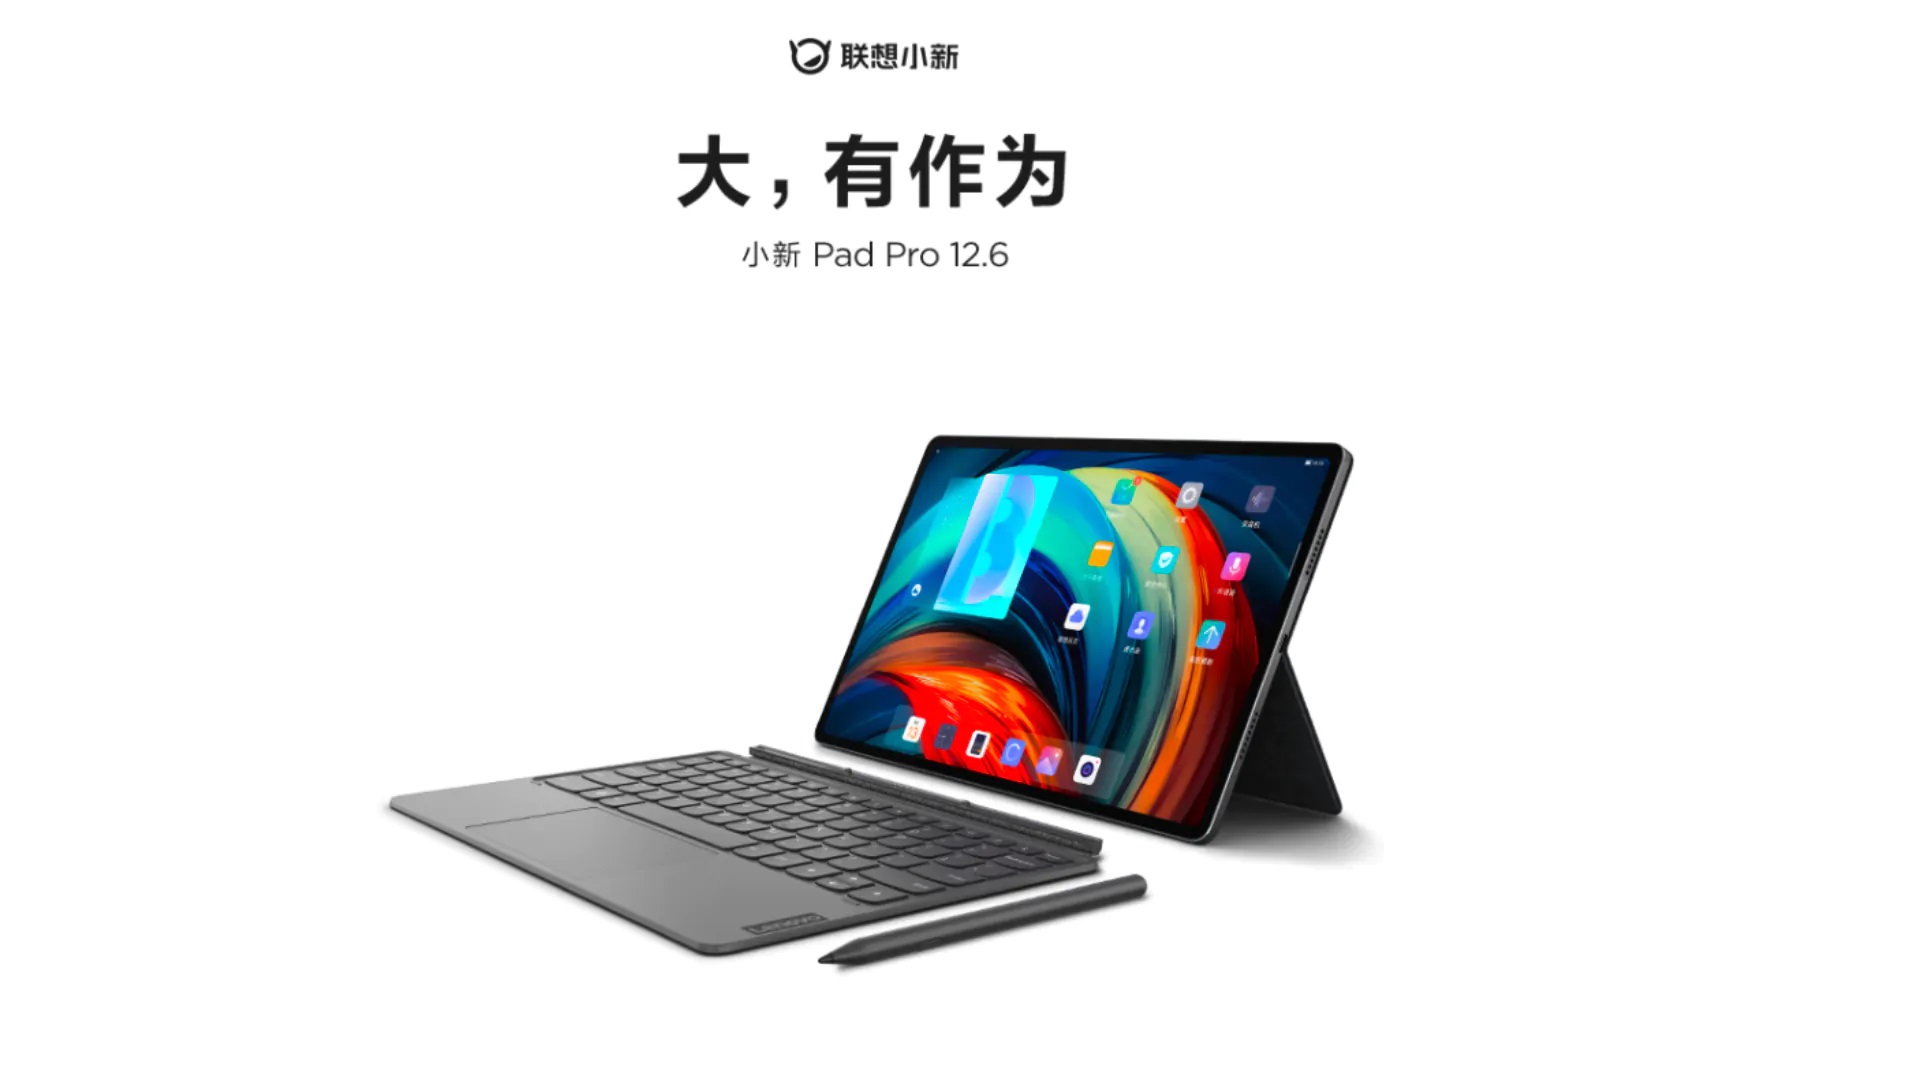 Lenovo Xiaoxin Pad Pro 12.6: Flagowy tablet z Androidem z wyświetlaczem 120Hz Samsung E4 i ładowaniem 45W za 670 dolarów